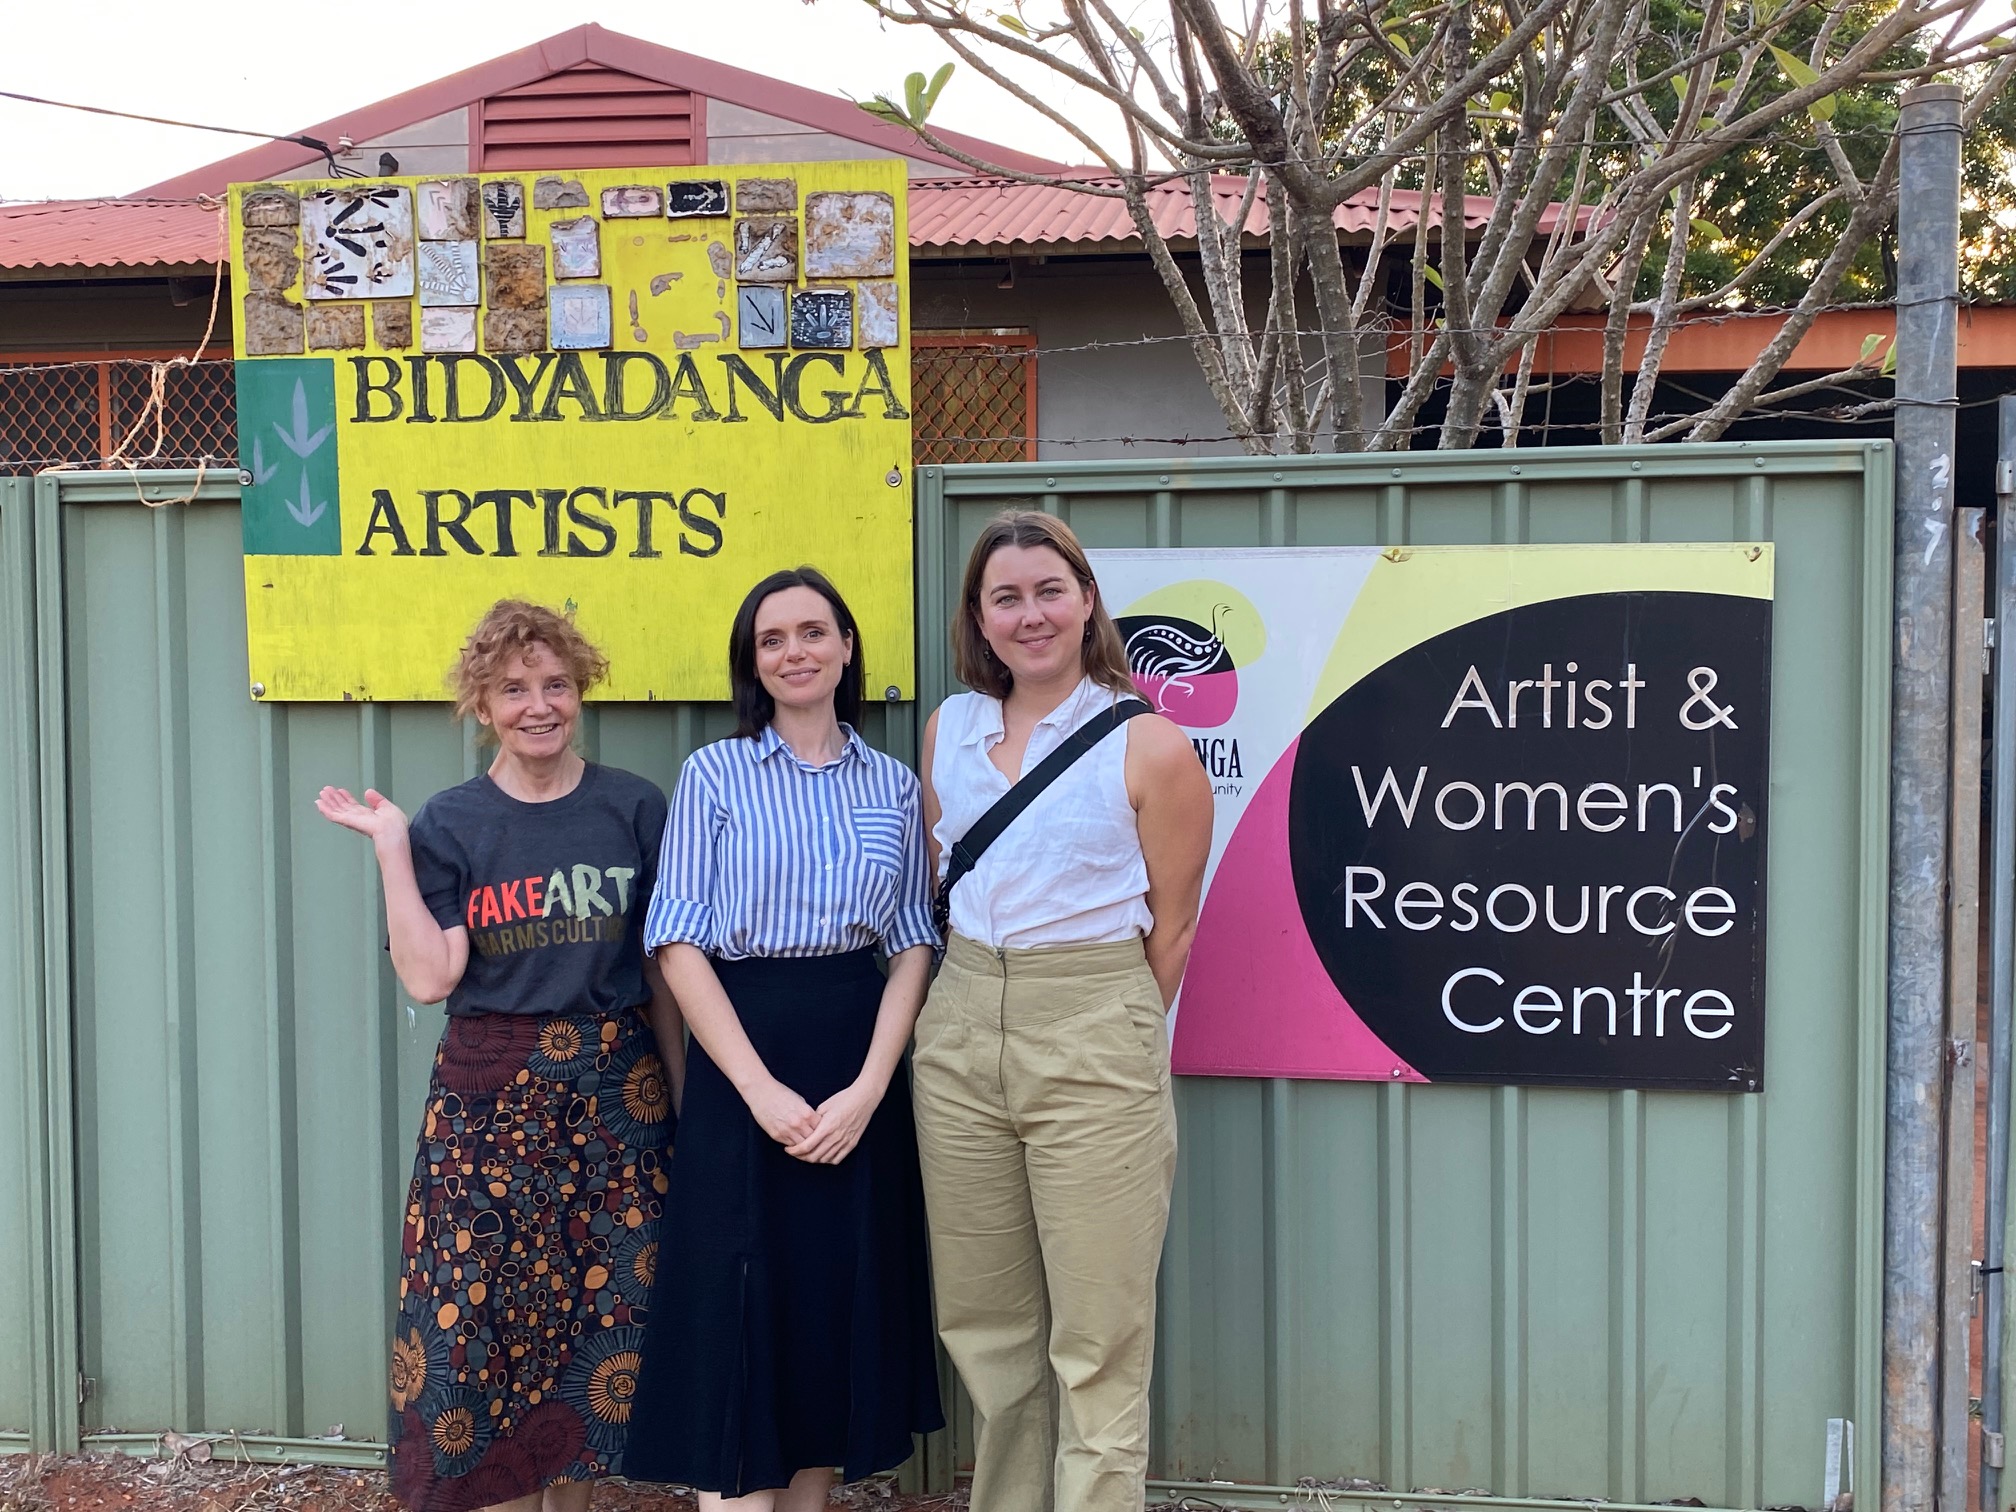 Robyn, Chloe, and Clea outside Bidyadanga Artists.